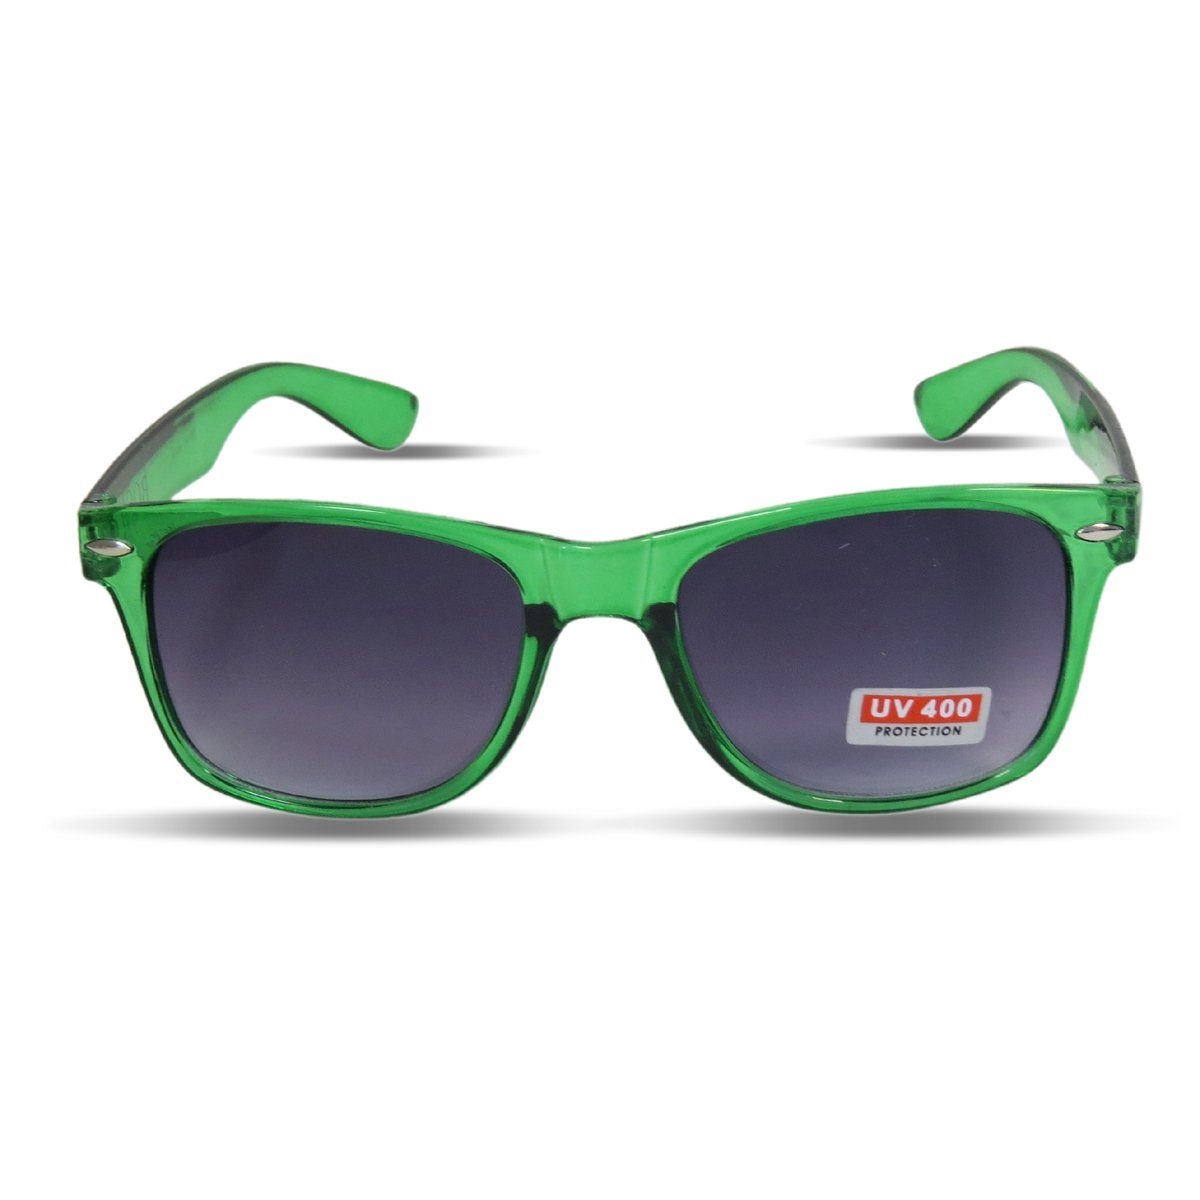 Grüne Damen Sonnenbrillen online kaufen | OTTO